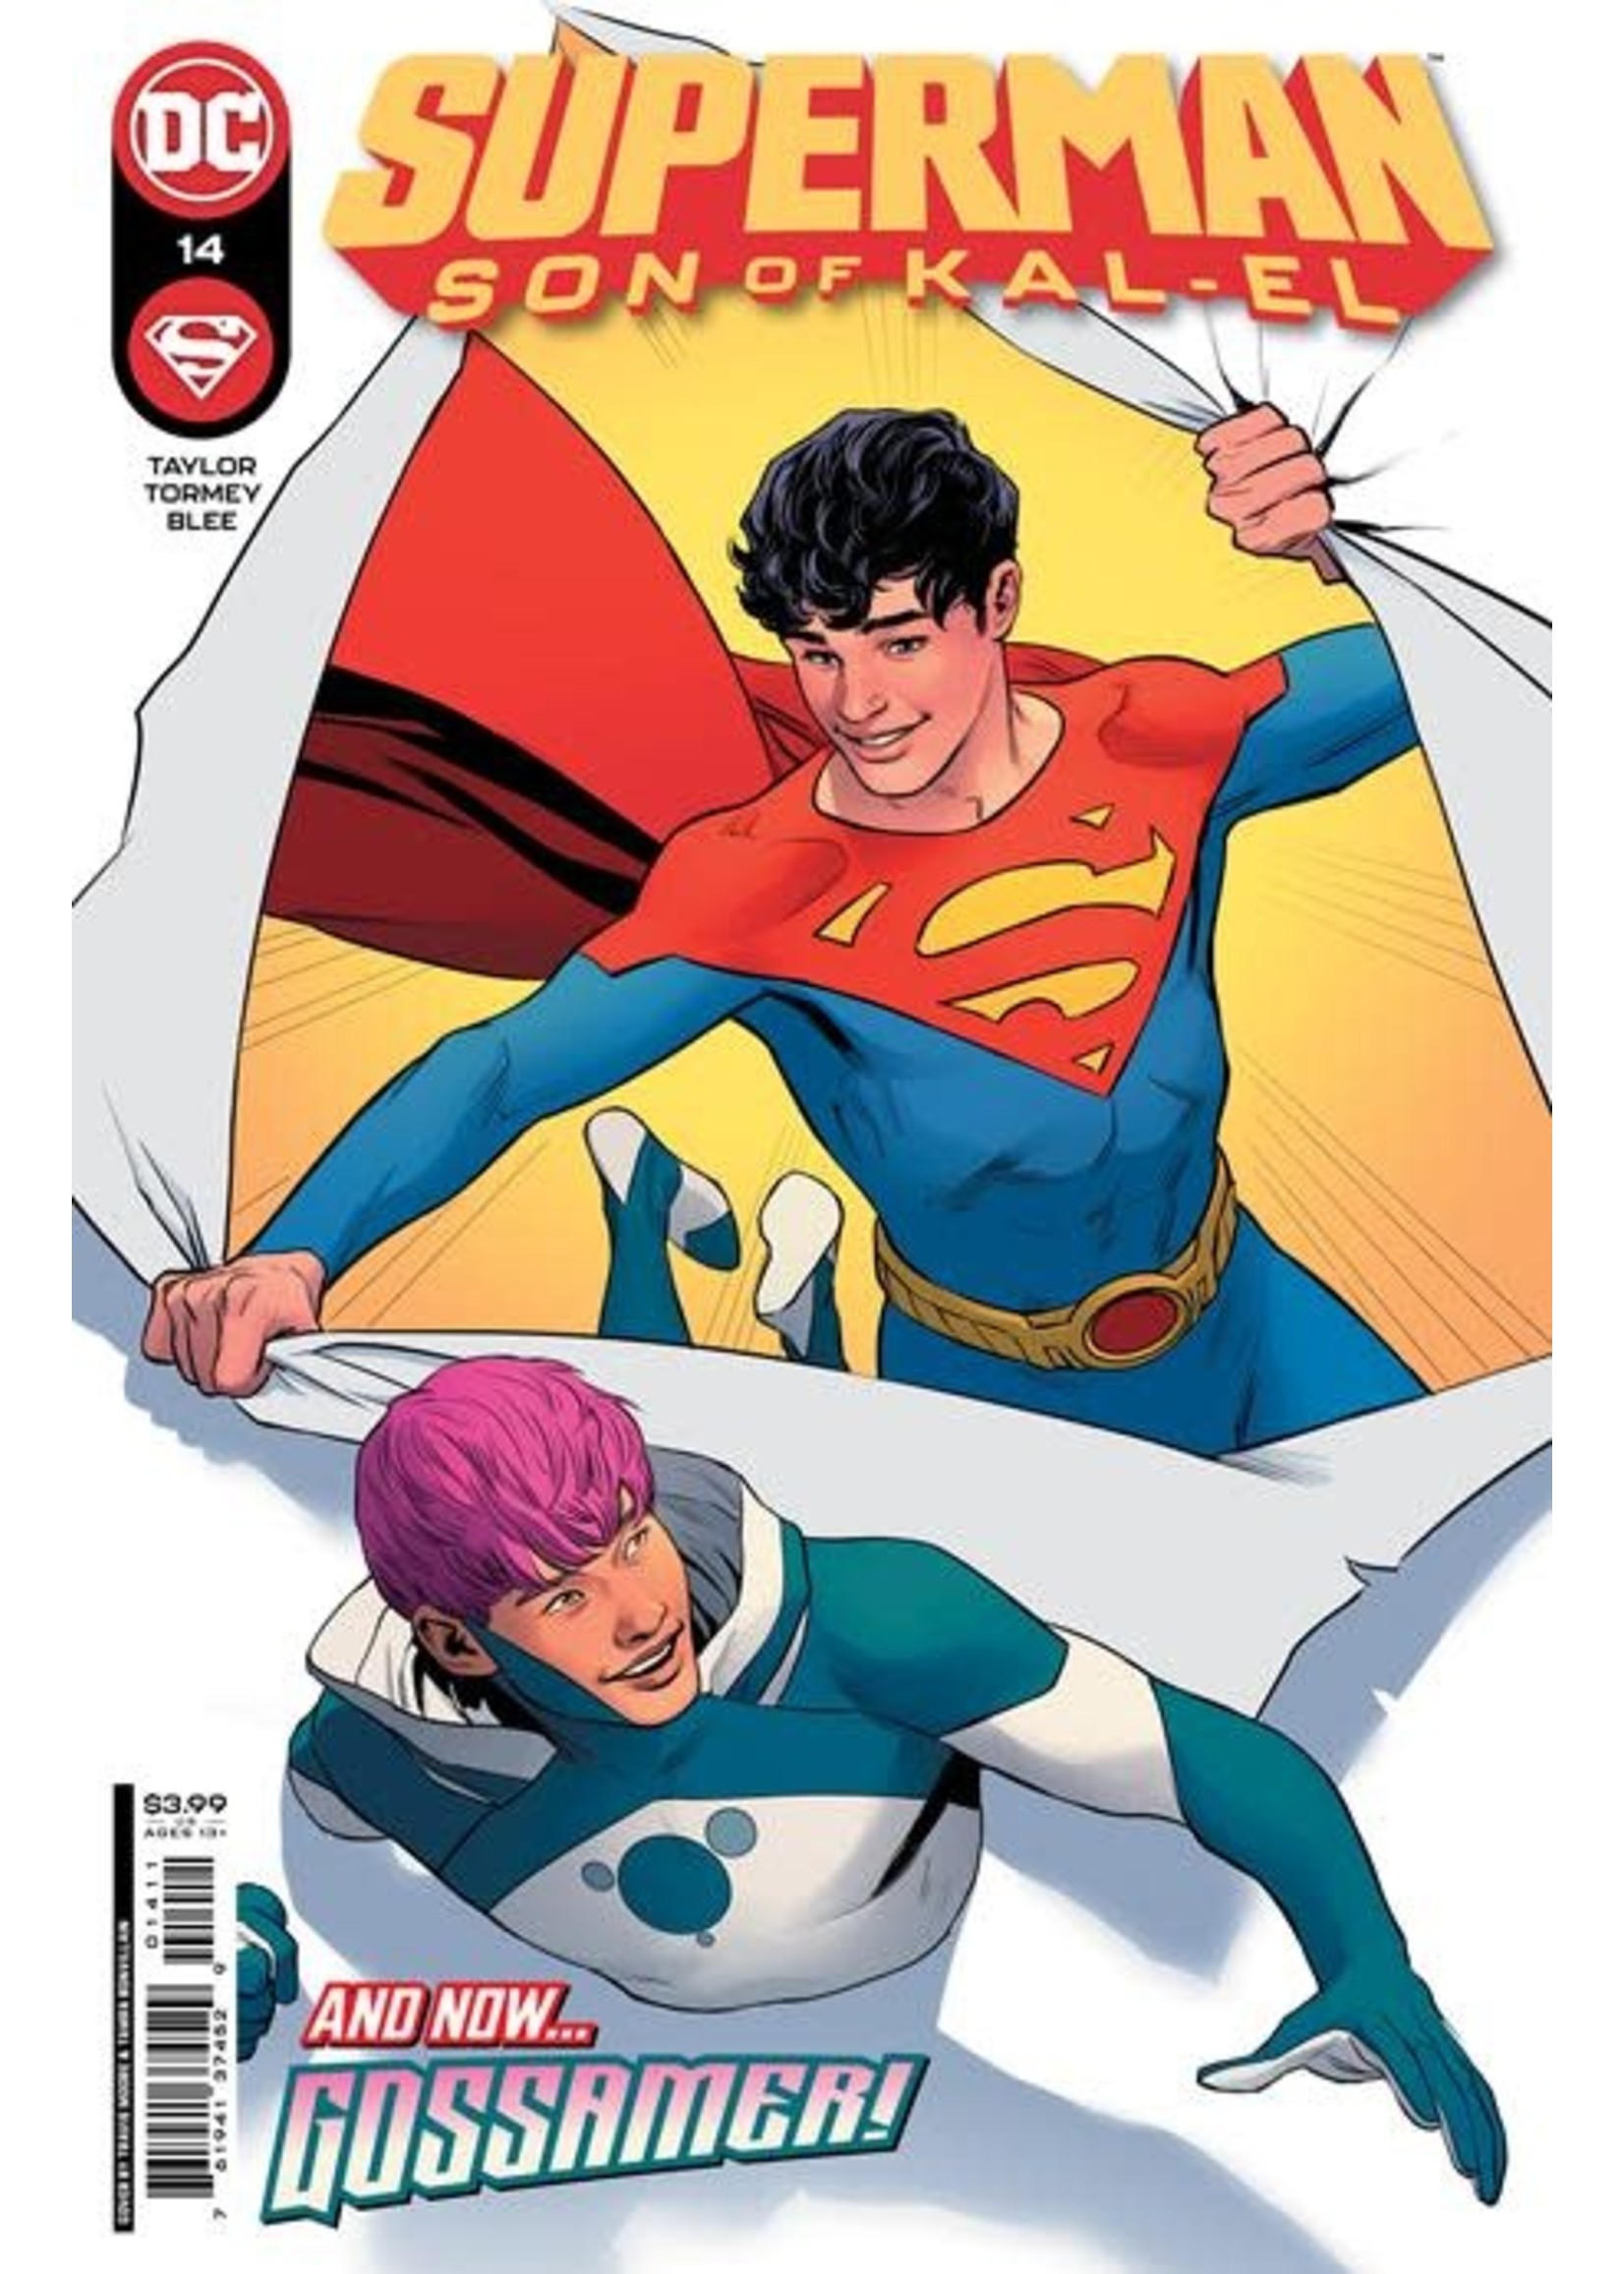 DC COMICS SUPERMAN SON OF KAL-EL #14 CVR A TRAVIS MOORE